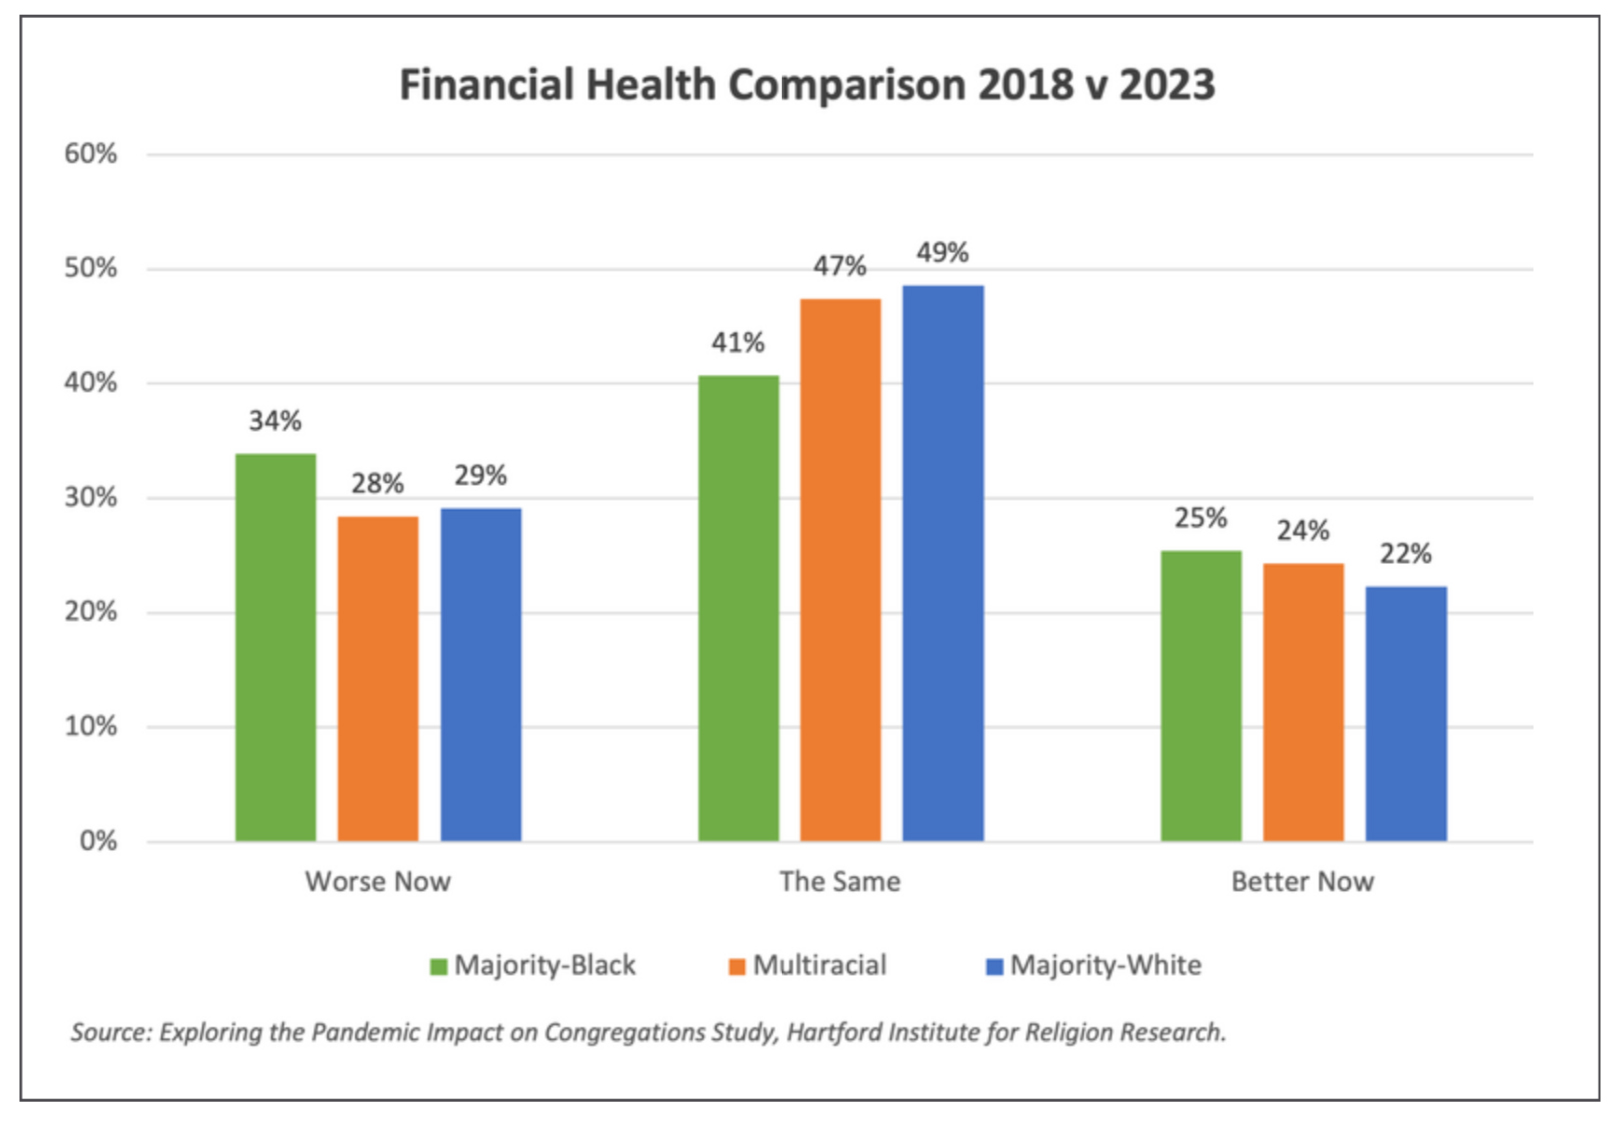 "Financial Health Comparison 2018 v 2023" (Graphic courtesy HIRR)